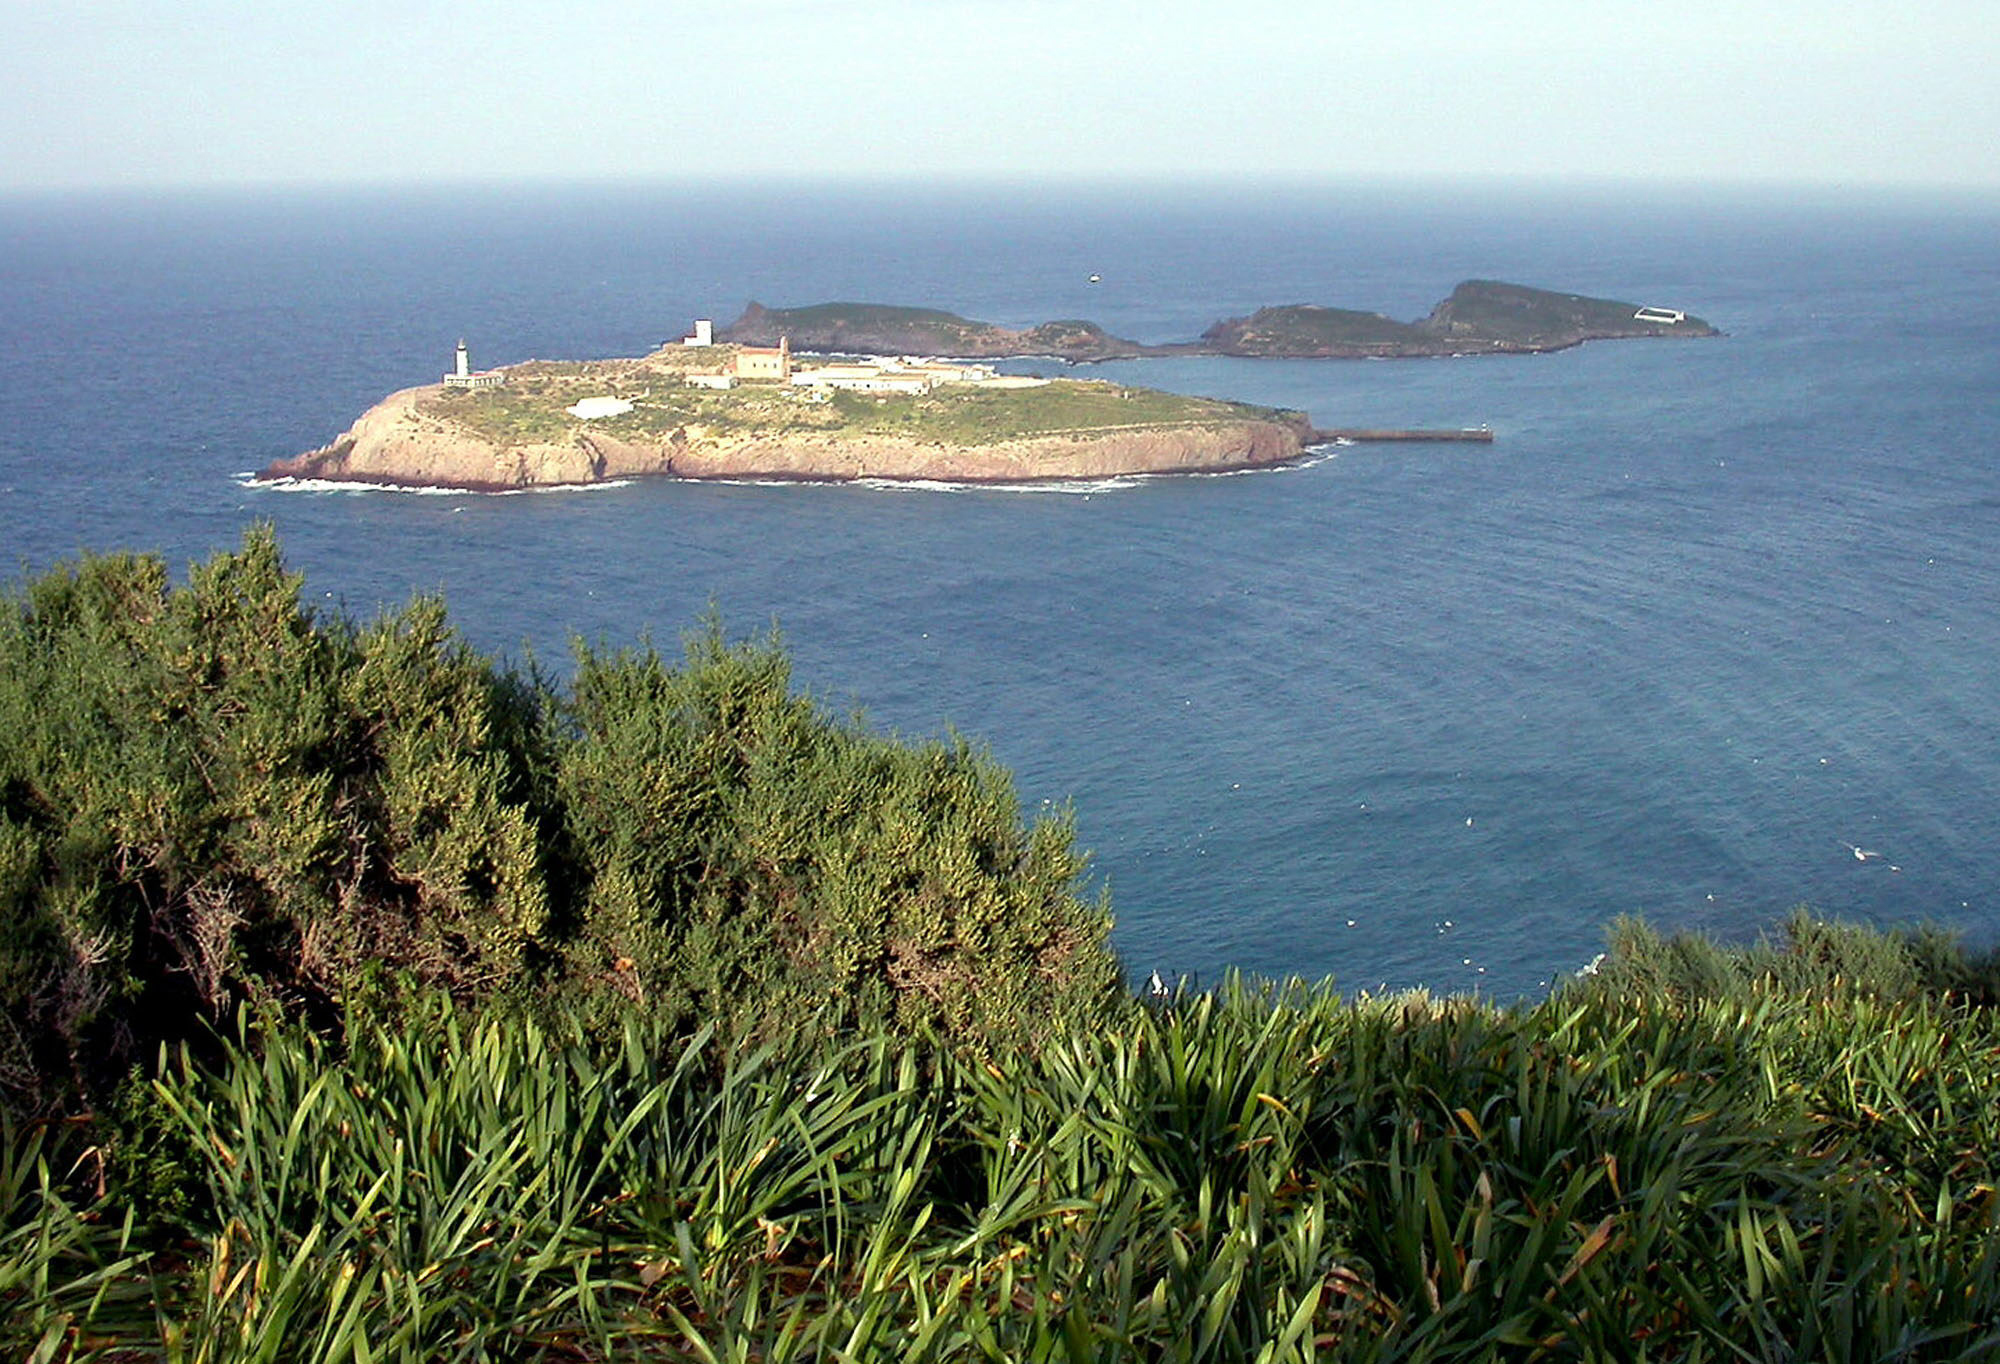 Las islas Chafarinas, con la de Isabel II, la nica habitada, en primer plano.